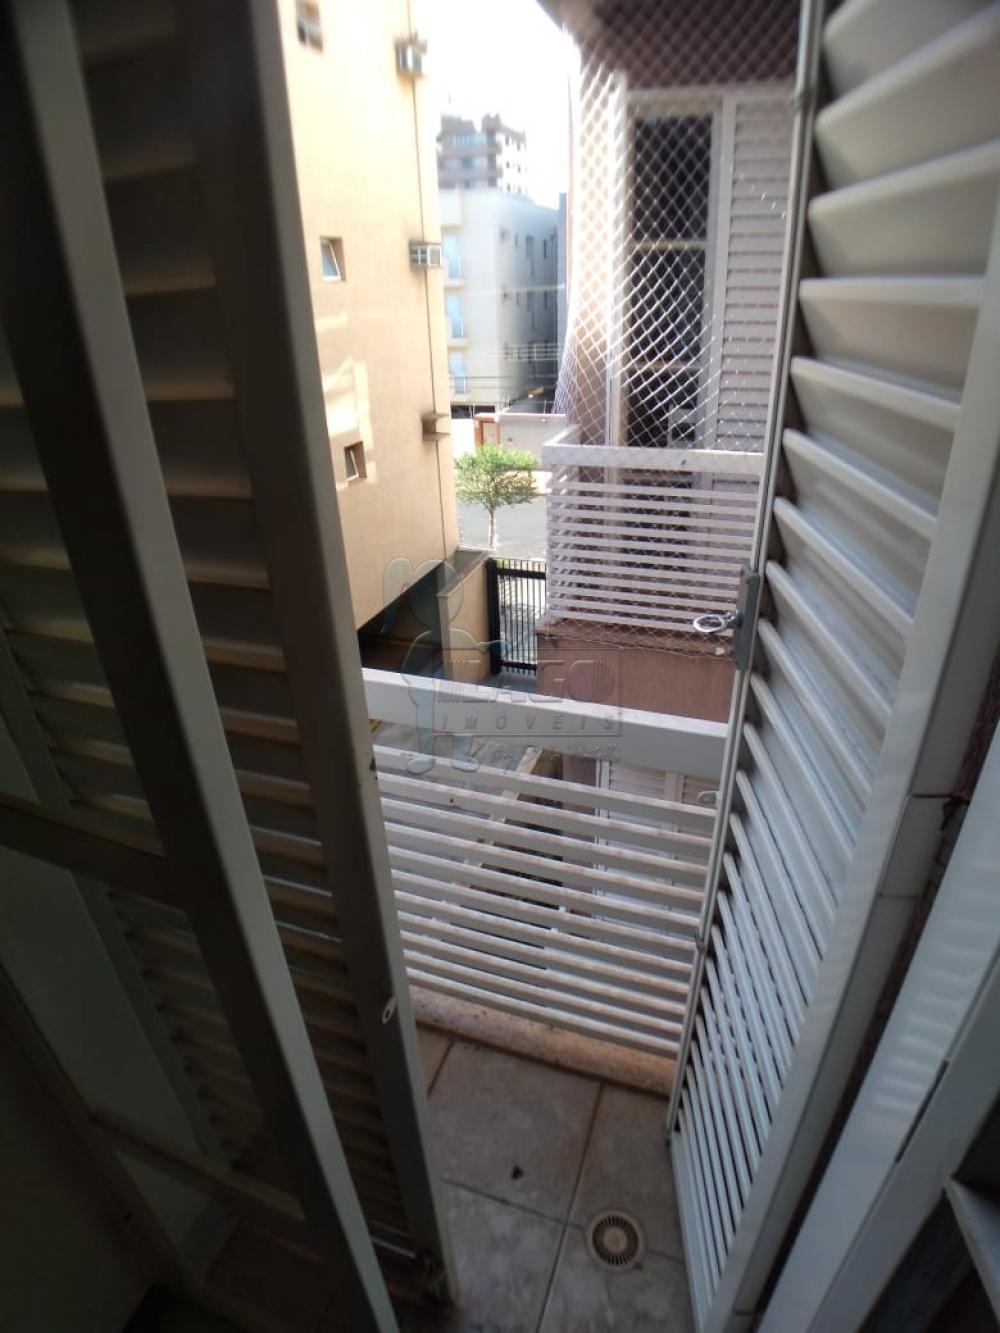 Alugar Apartamentos / Padrão em Ribeirão Preto R$ 1.000,00 - Foto 6